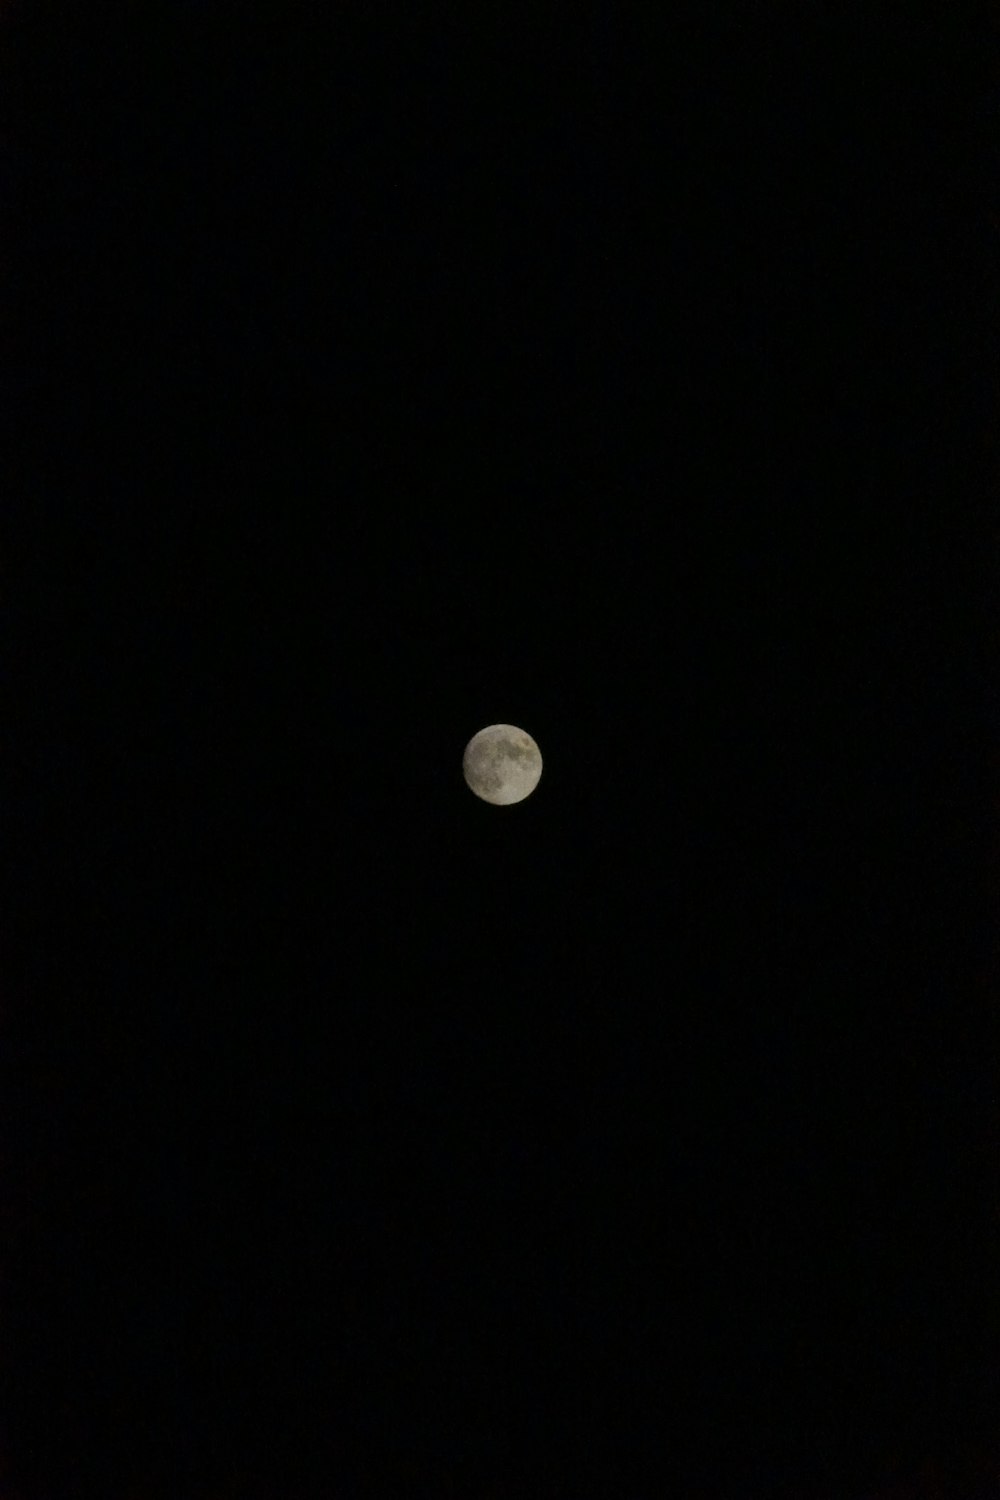 Se ve una luna llena en el cielo oscuro